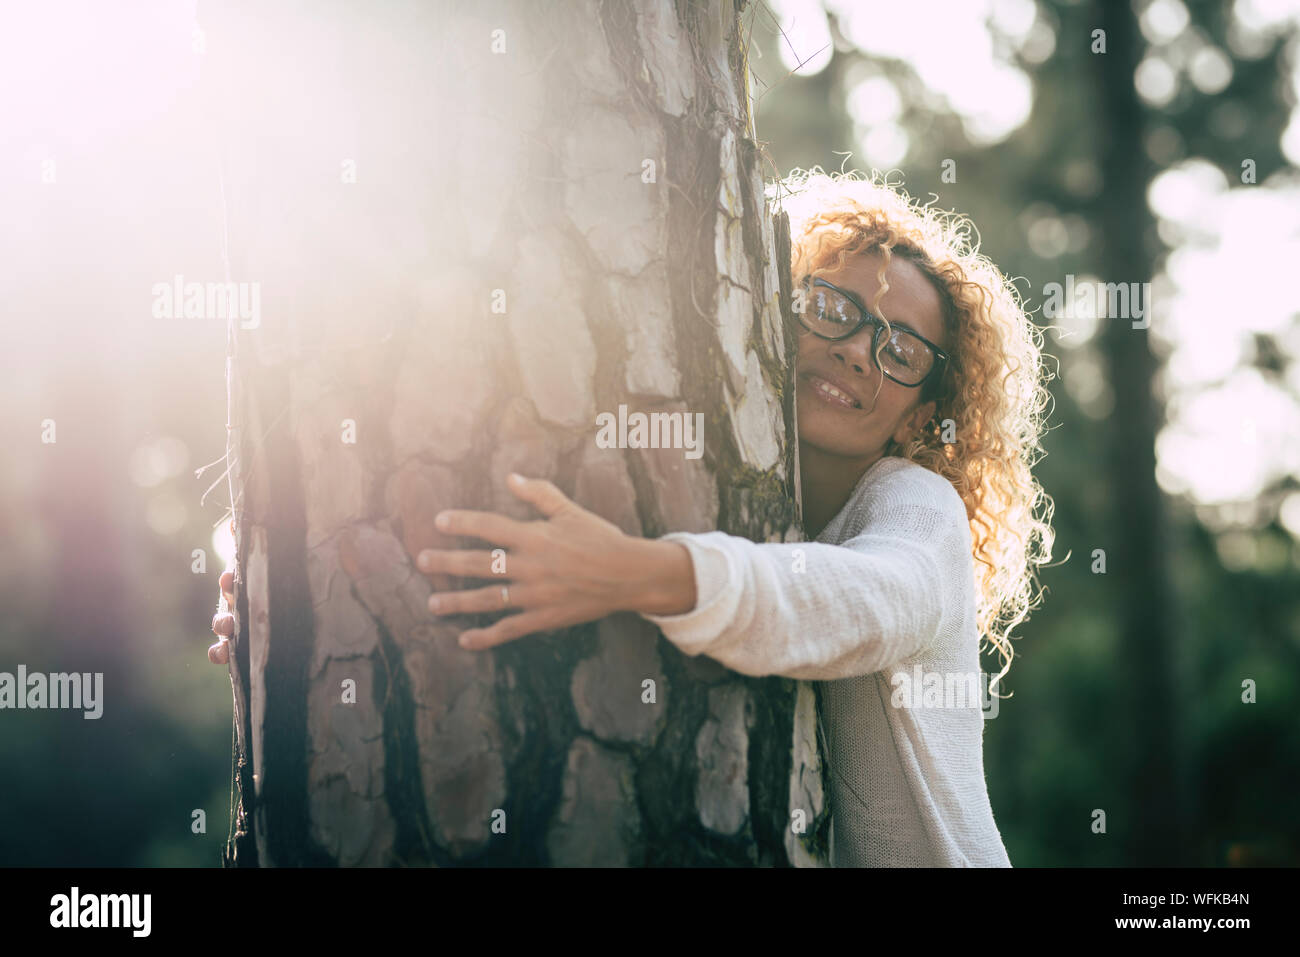 Schöne Frau mit Brille und umarmte einen großen Baum mit Liebe und Zuneigung - der Wald Konzept und Lebensstil speichern - Erwachsene am Berg oder in einem Park Stockfoto